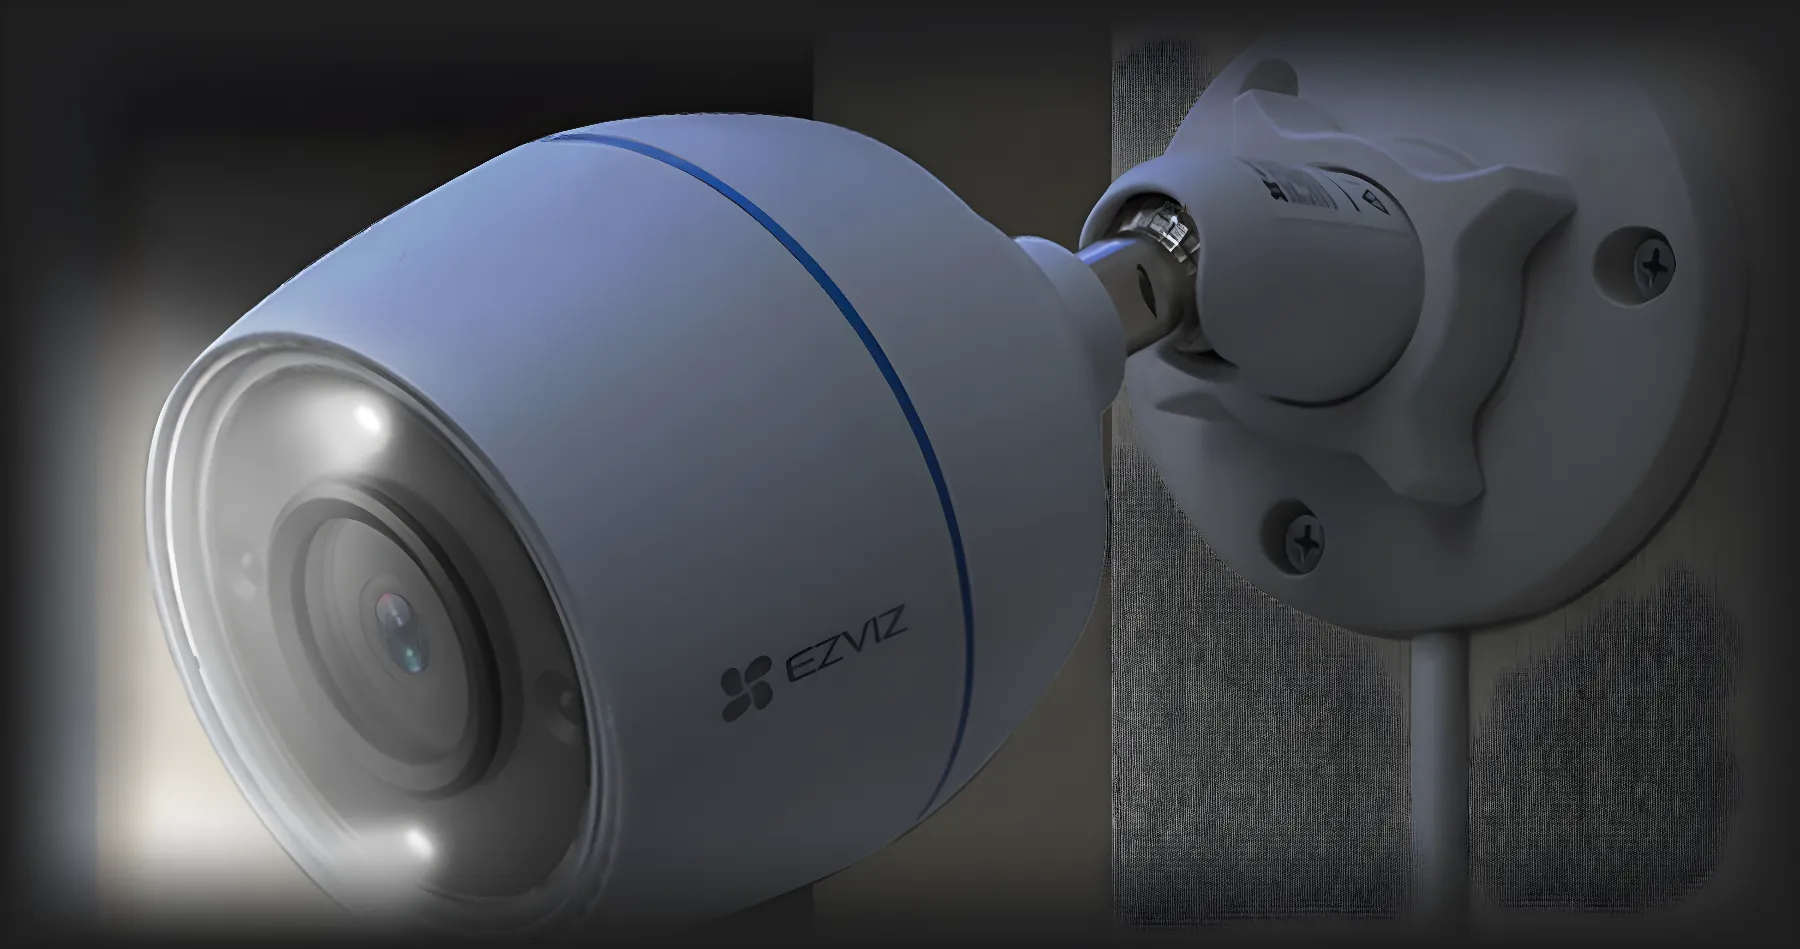 IP камера Ezviz CS-H3C (1080P, 2.8мм) (White)